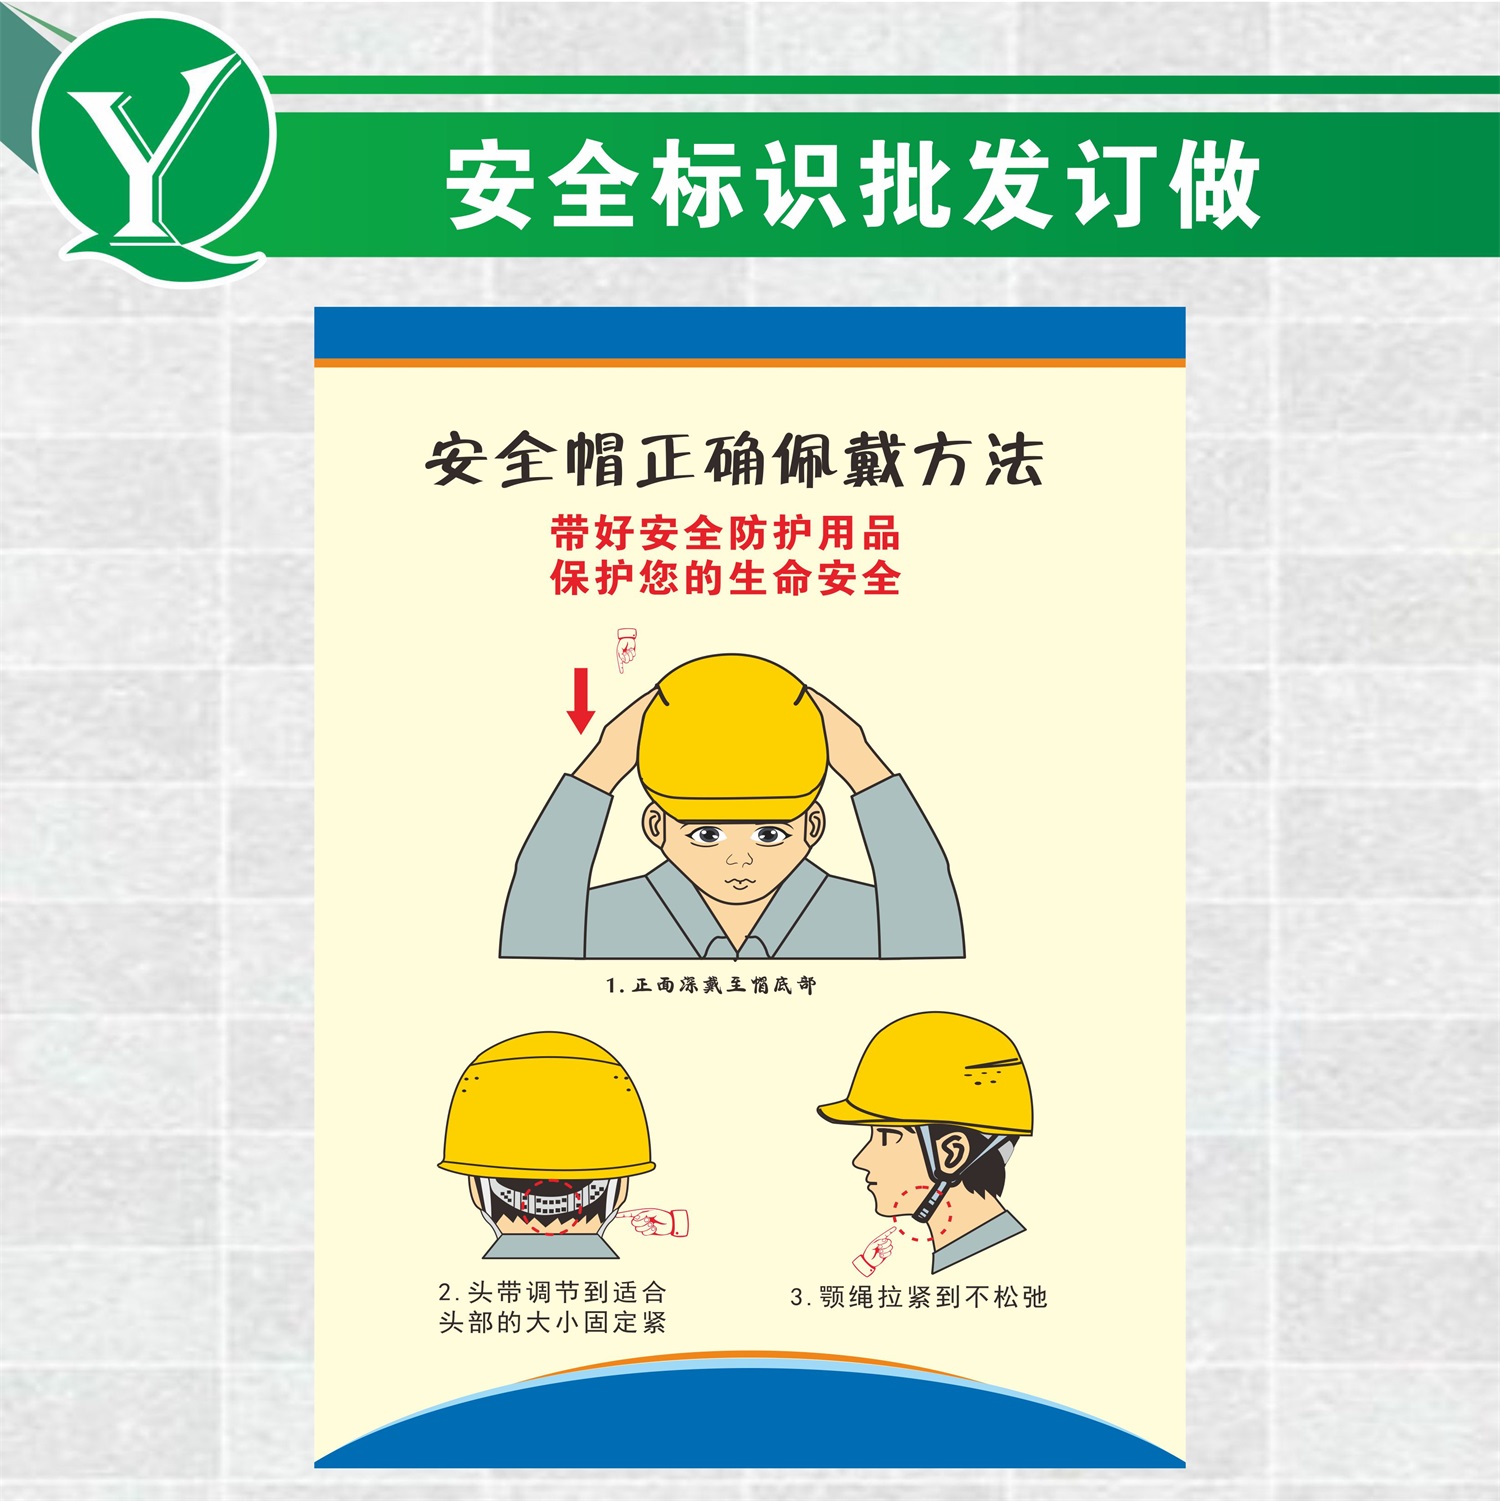 安全安全帽必须示意图pvc提示规范穿着防护用品头盔标志牌